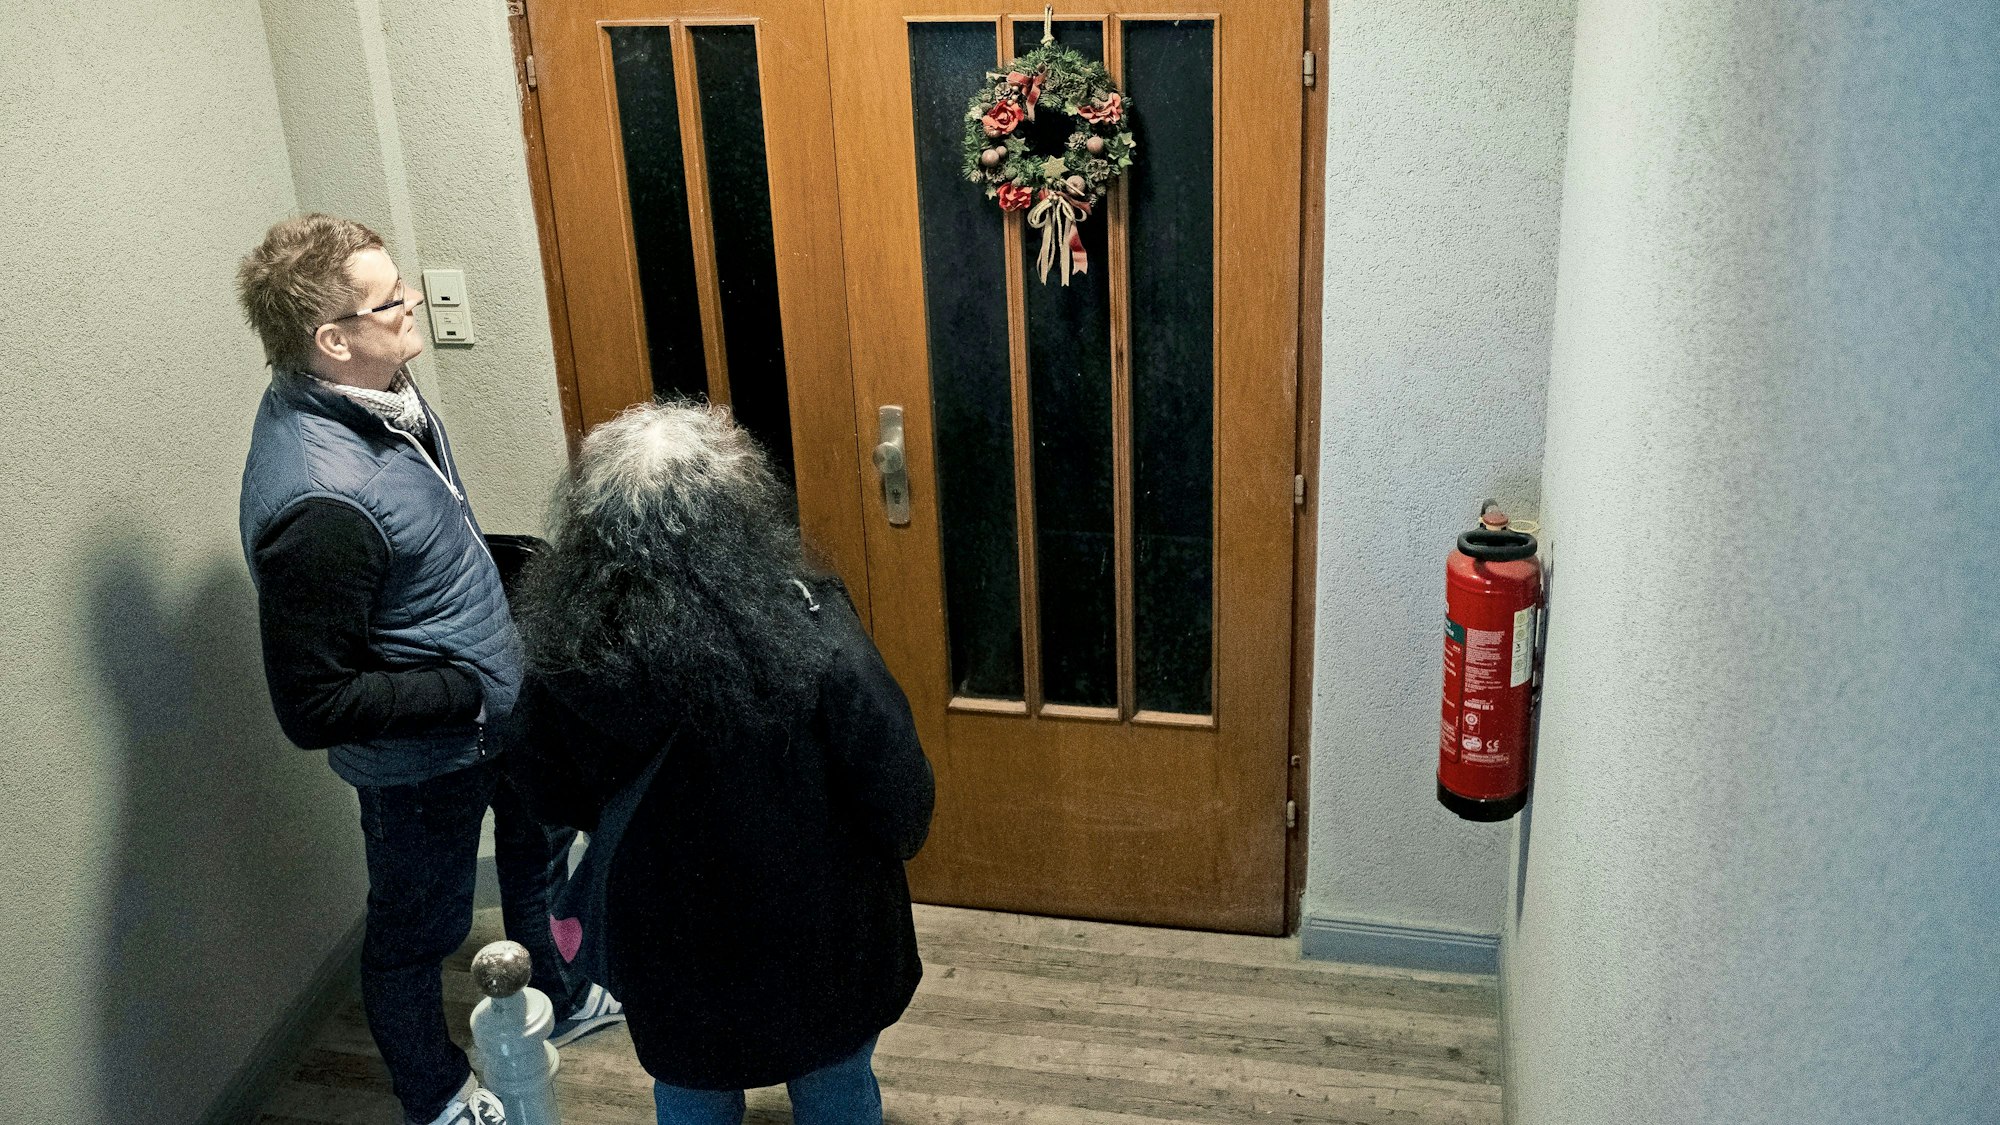 Fatma Edeer-Cetin und Sascha Riepel vom Jobcenter Kassel stehen vor einer Wohnungstür, an der noch im März Weihnachtsschmuck zu sehen ist:  ein Hinweis darauf, dass die gesuchte Person möglicherweise ausgezogen ist.

(Foto: Jonas Dengler)